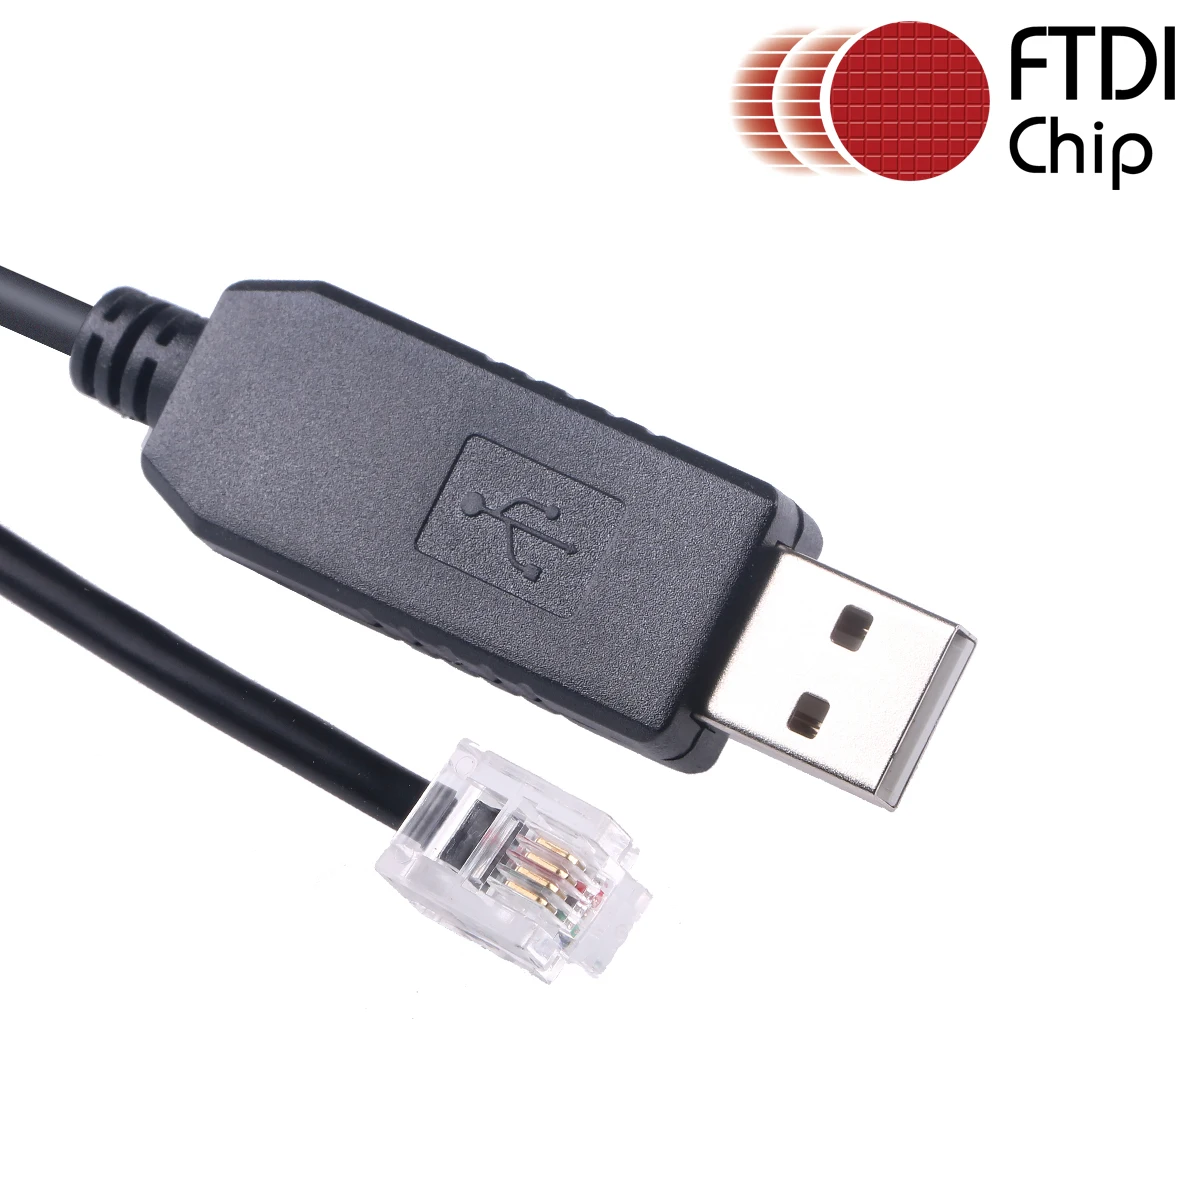 

Последовательный кабель Skywatcher FTDI USB к RS232 для Sky-watcher EQ6 EQ5 HEQ5 EQMOD ASCOM Synscan, кабель для Ручного Контроллера